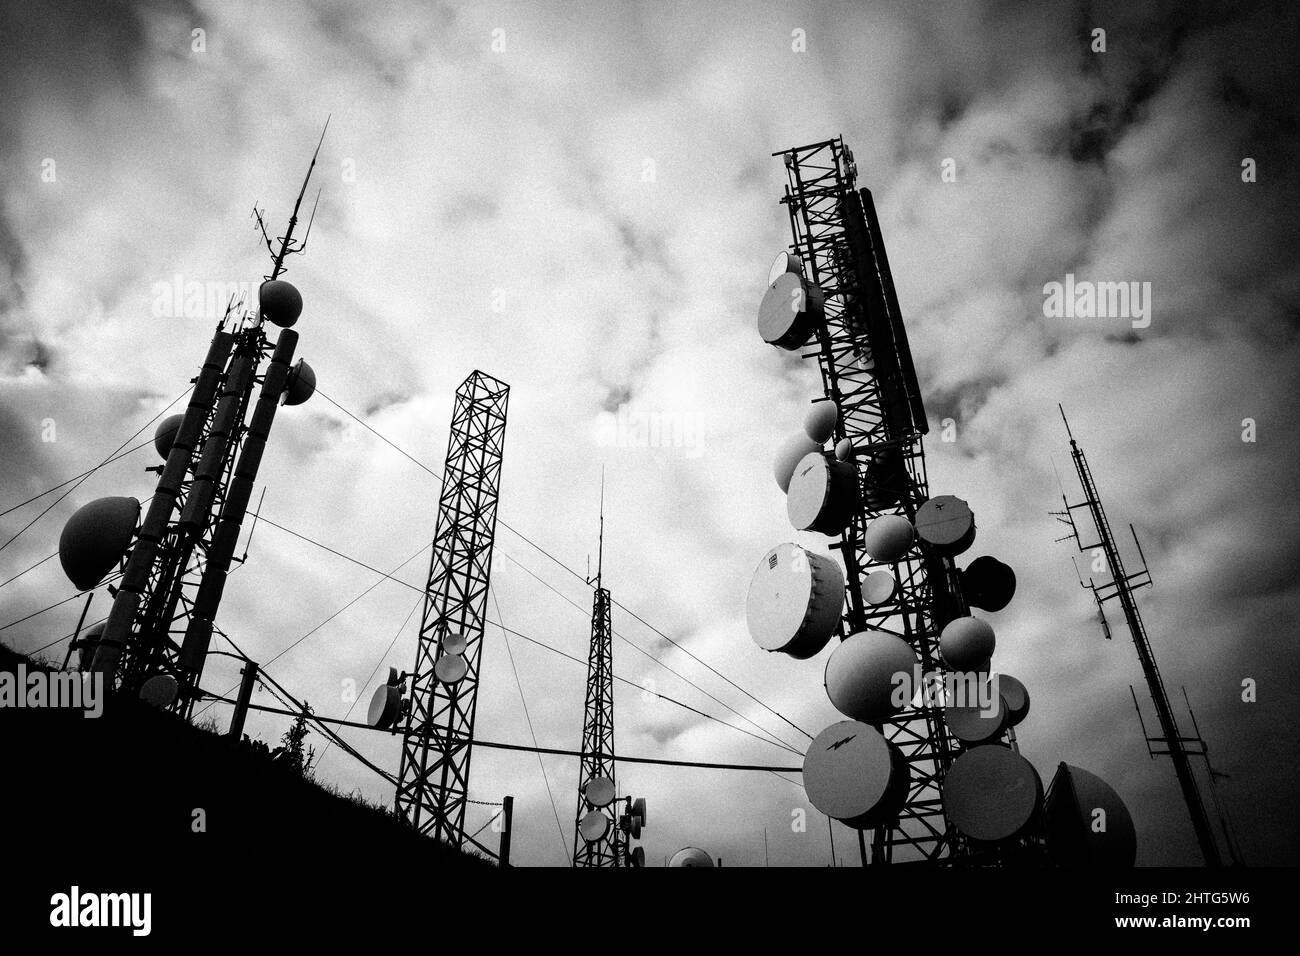 Immagine inferiore in scala di grigi delle antenne radio sullo sfondo delle nuvole. Foto Stock